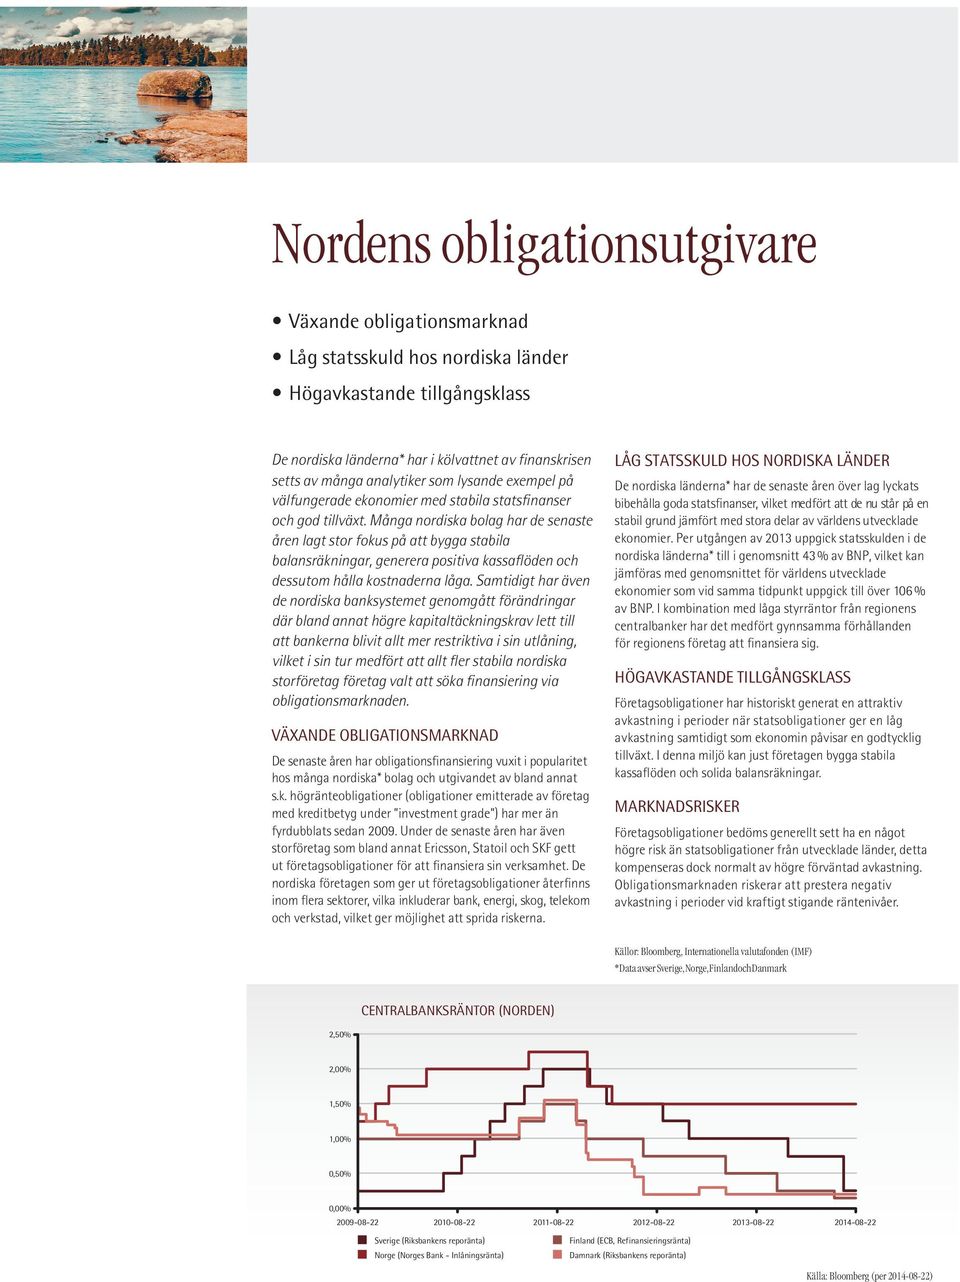 Många nordiska bolag har de senaste åren lagt stor fokus på att bygga stabila balansräkningar, generera positiva kassaflöden och dessutom hålla kostnaderna låga.